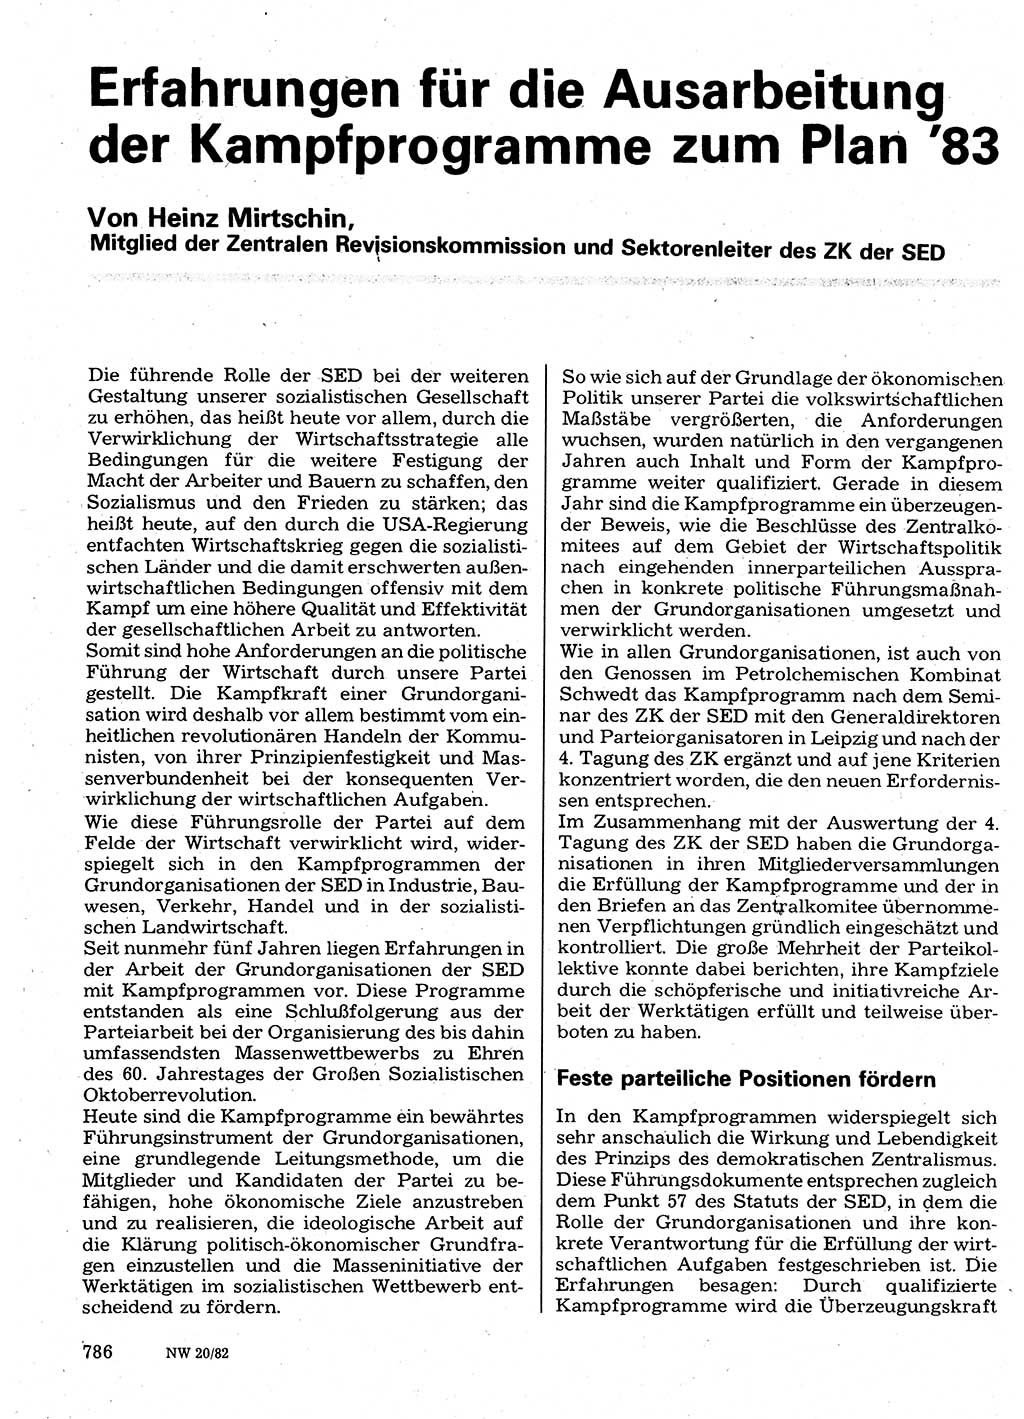 Neuer Weg (NW), Organ des Zentralkomitees (ZK) der SED (Sozialistische Einheitspartei Deutschlands) für Fragen des Parteilebens, 37. Jahrgang [Deutsche Demokratische Republik (DDR)] 1982, Seite 786 (NW ZK SED DDR 1982, S. 786)